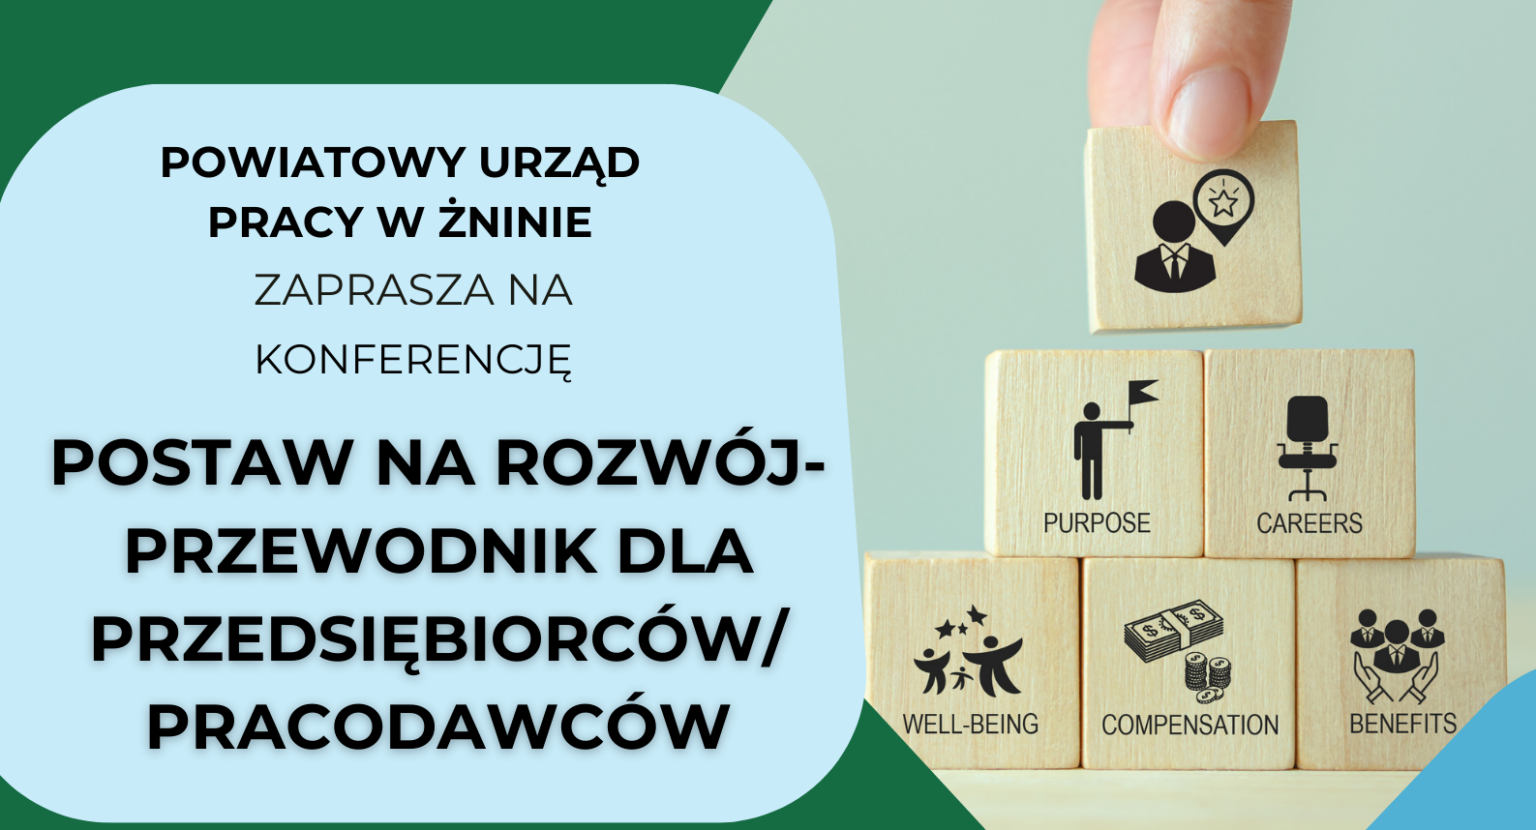 Powiatowy Urząd PRacy w Żninie zaprasza na konferencję: Postaw na rozwój - przewodnik dla przedsiębiorców/pracodawców